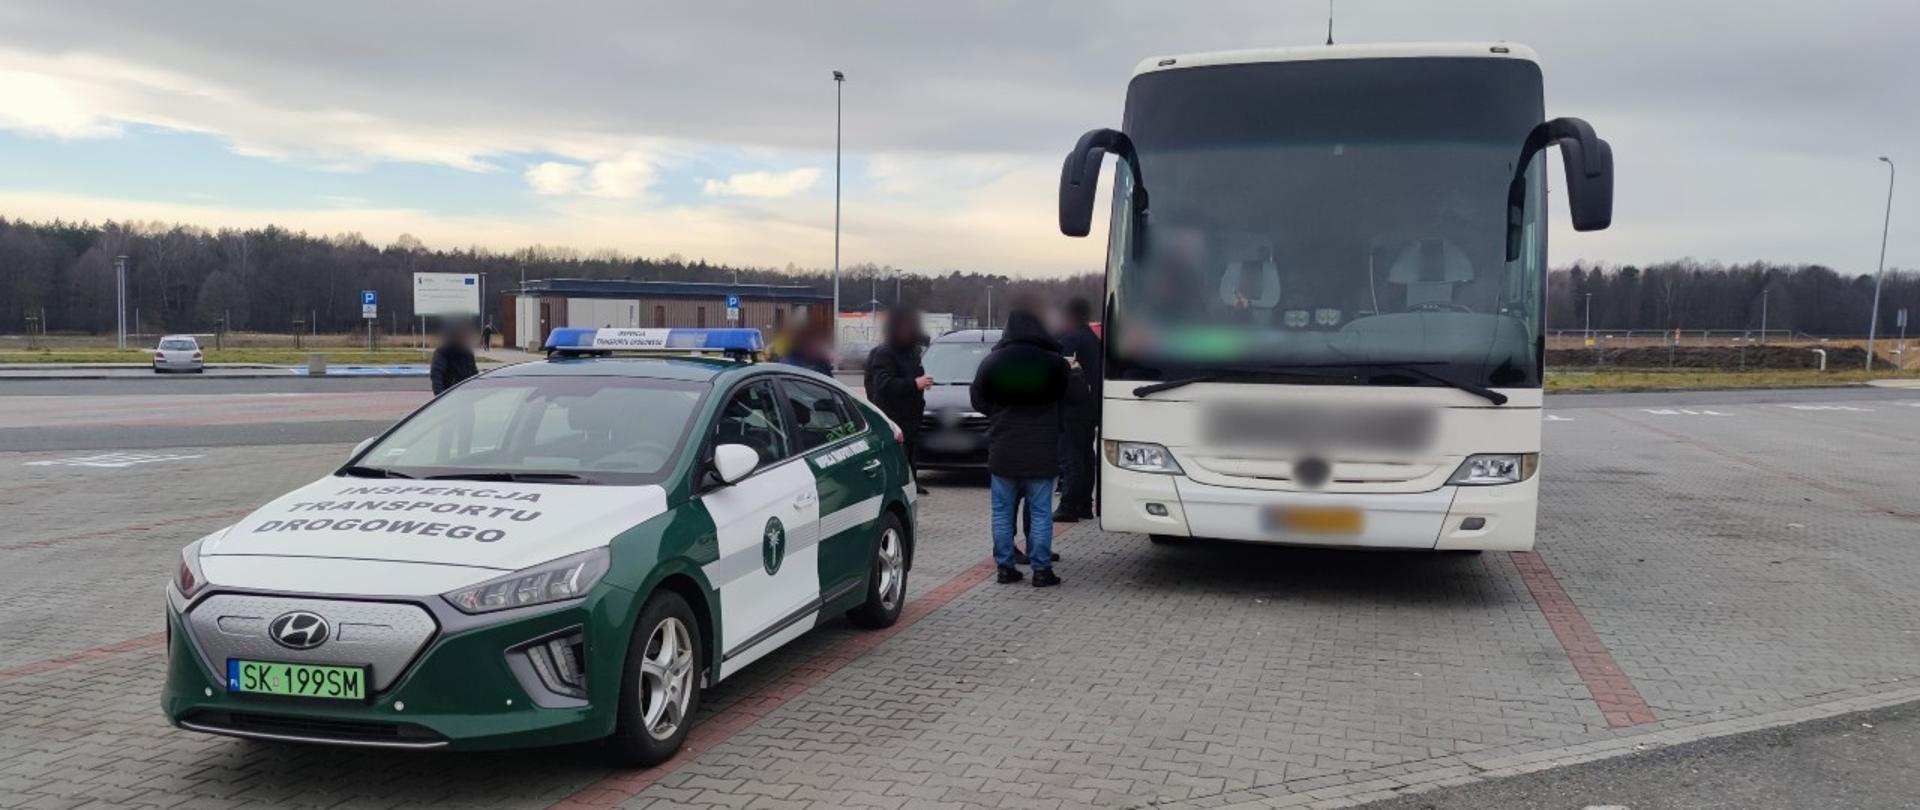 Od lewej: oznakowany radiowóz śląskiej Inspekcji Transportu Drogowego o napędzie elektrycznym i zatrzymany do kontroli autobus dalekobieżny stoją na parkingu koło autostrady A1.